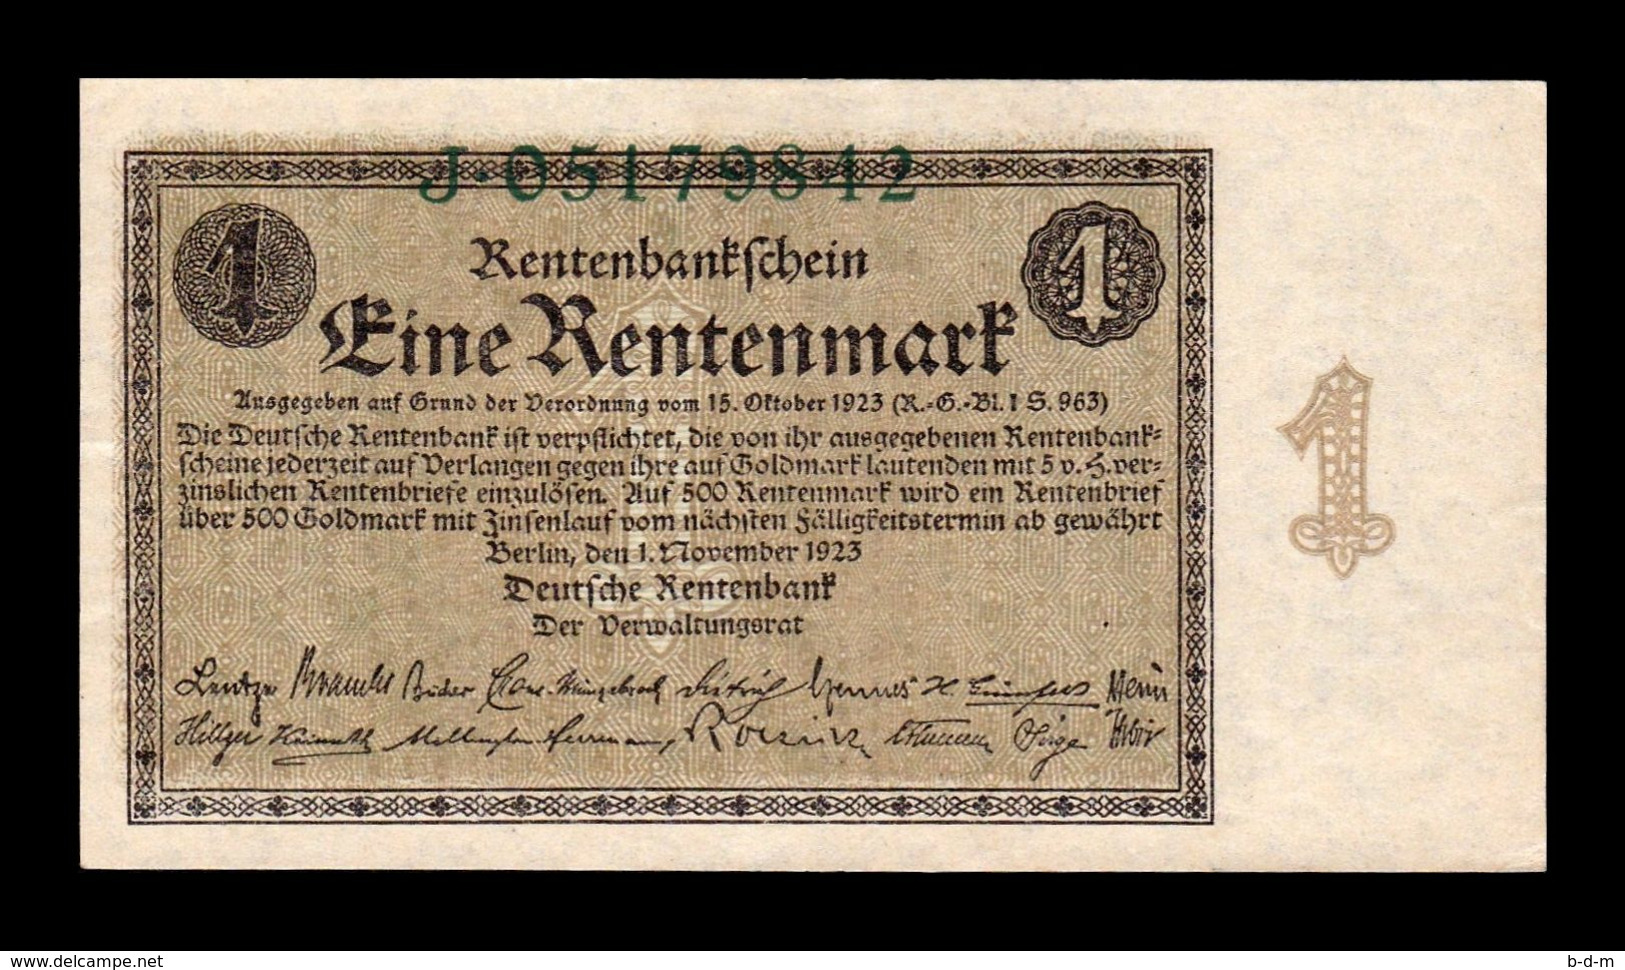 Alemania Germany 1 Rentenmark 1923 Pick 161 Serie J SC UNC - 1 Rentenmark